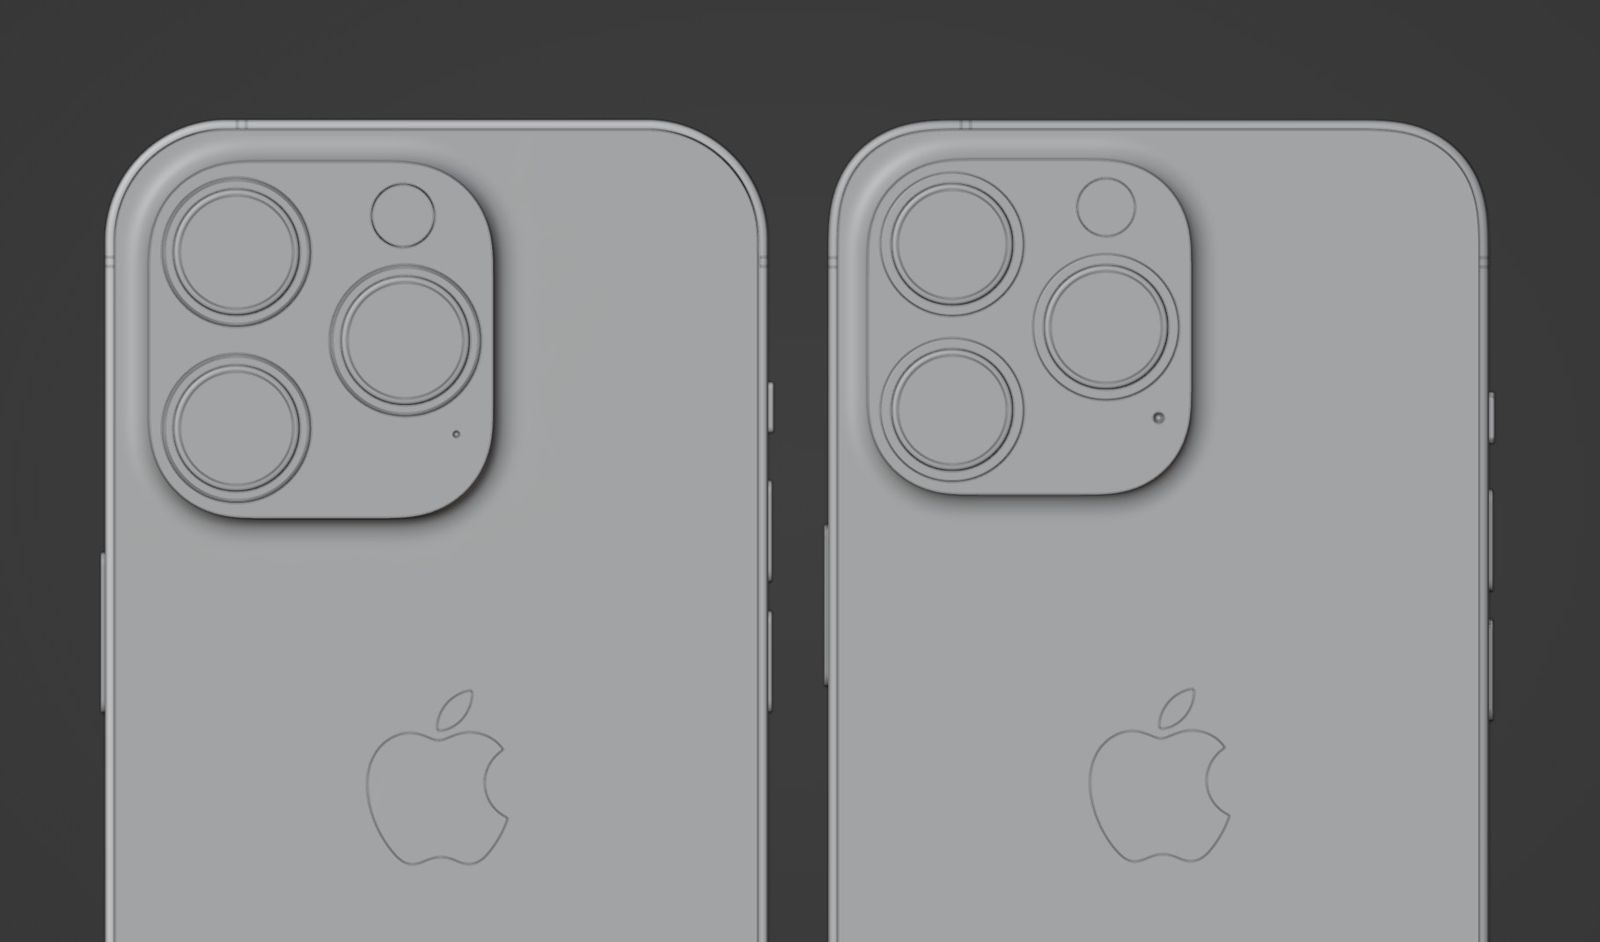 Render do "iPhone 14 Pro" comparado com o do iPhone 13 Pro, por Ian Zelbo